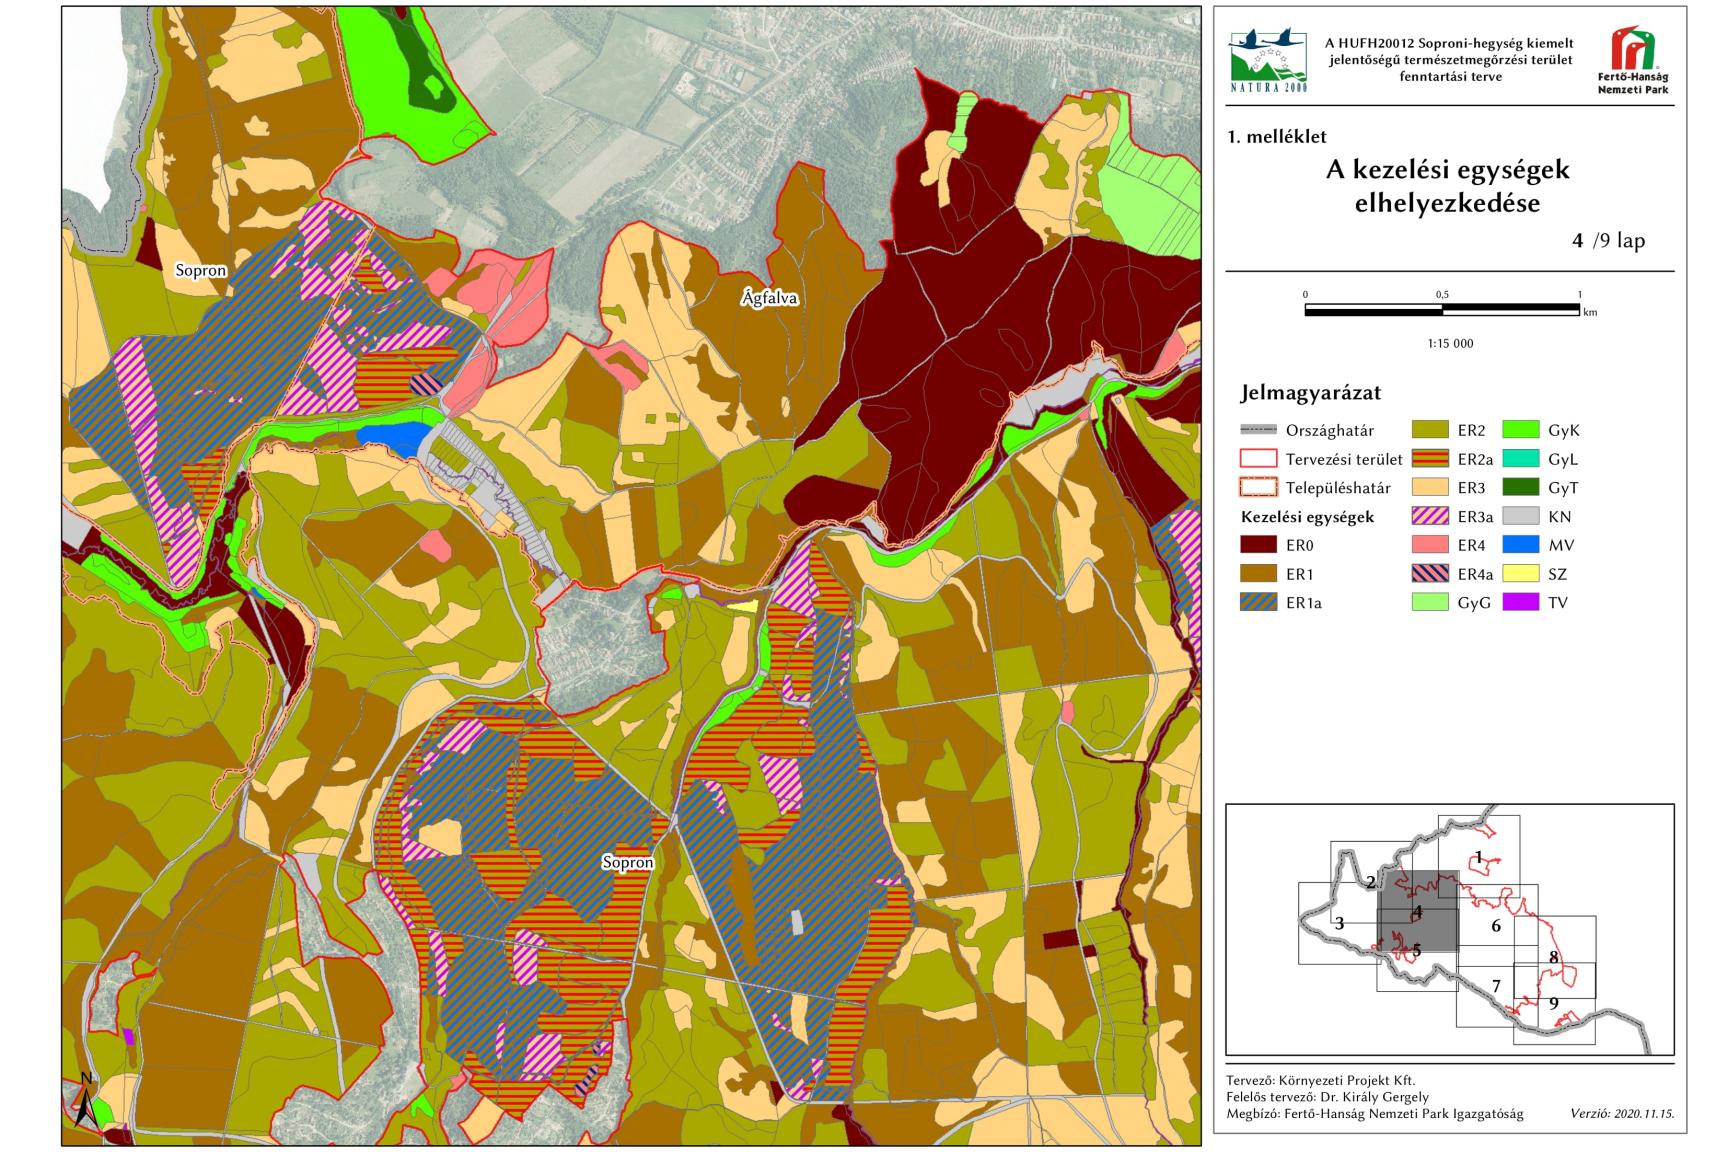 4. ábra: A Soproni-hegység kiemelt jelentőségű természetmegőrzési terület 4. szelvényének kezelési egységei